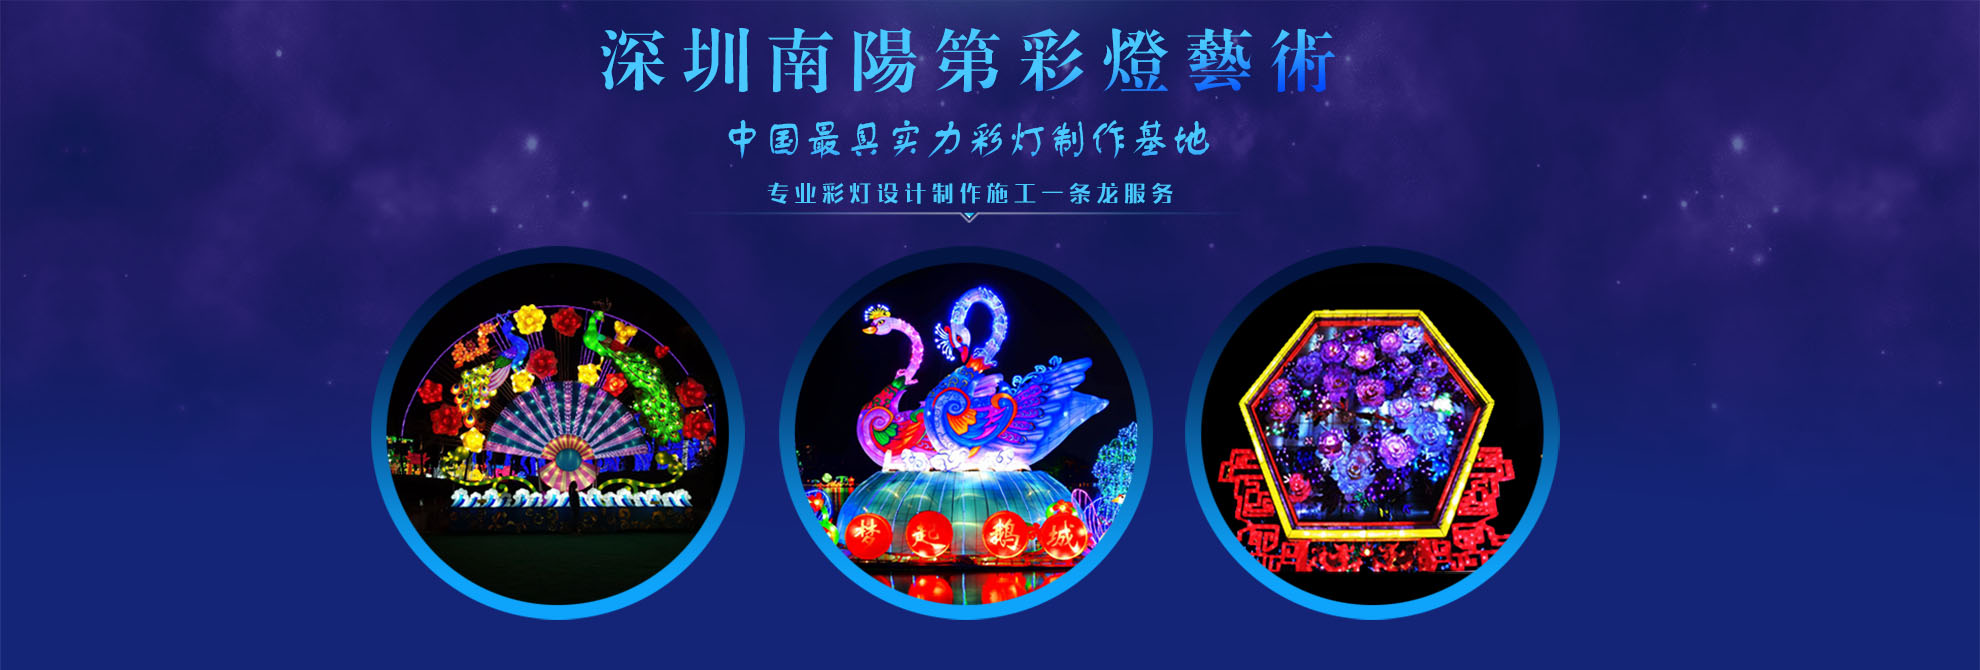 深圳市南阳第环境艺术设计有限公司是一家节日装饰环境设计,圣诞装饰制作,大型圣诞树设计公司